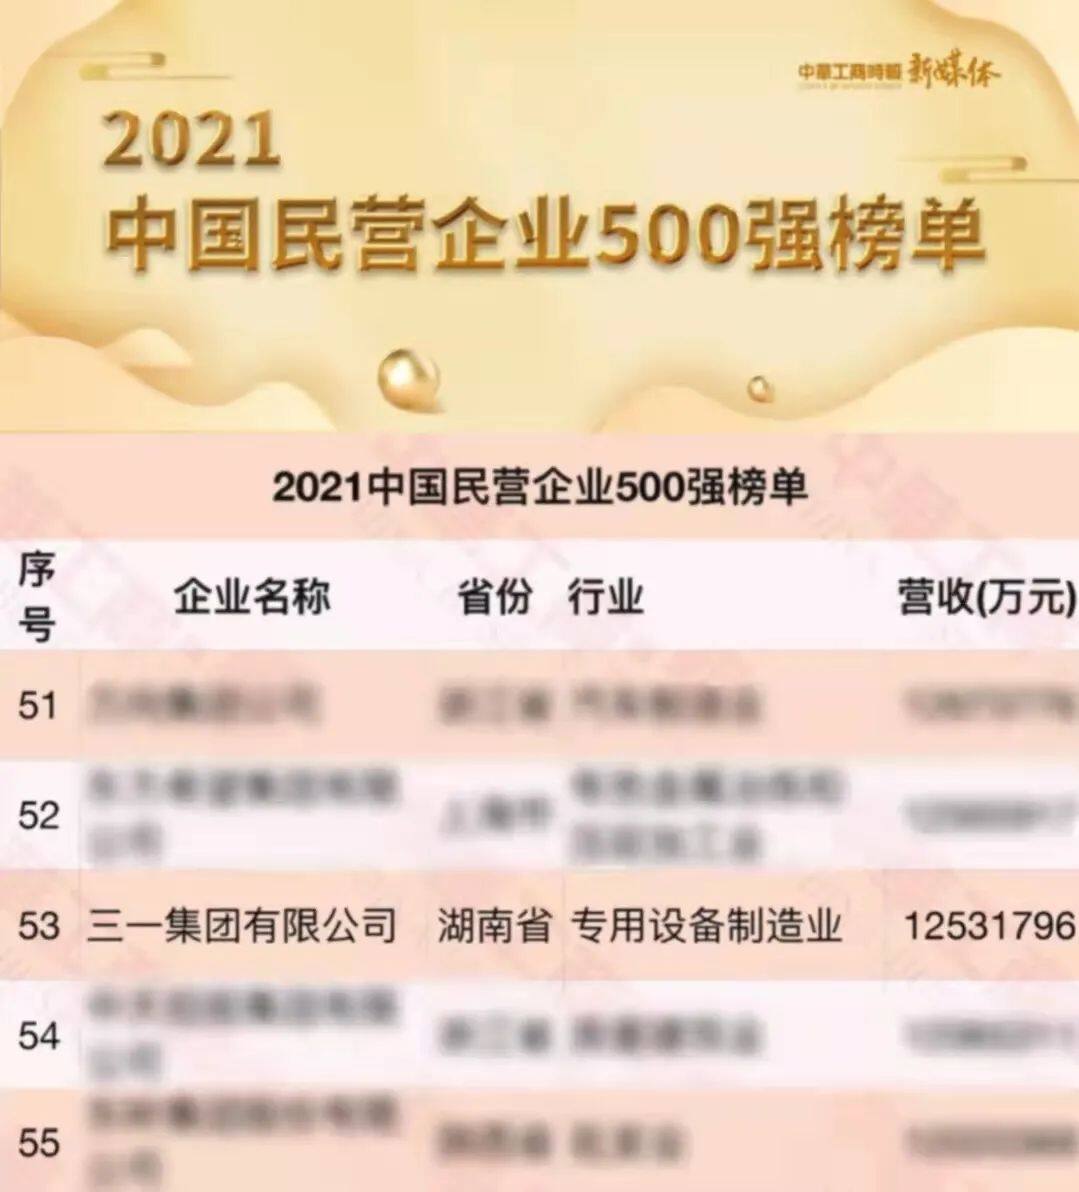 三一集团位列“2021中国民营企业500强”第53位